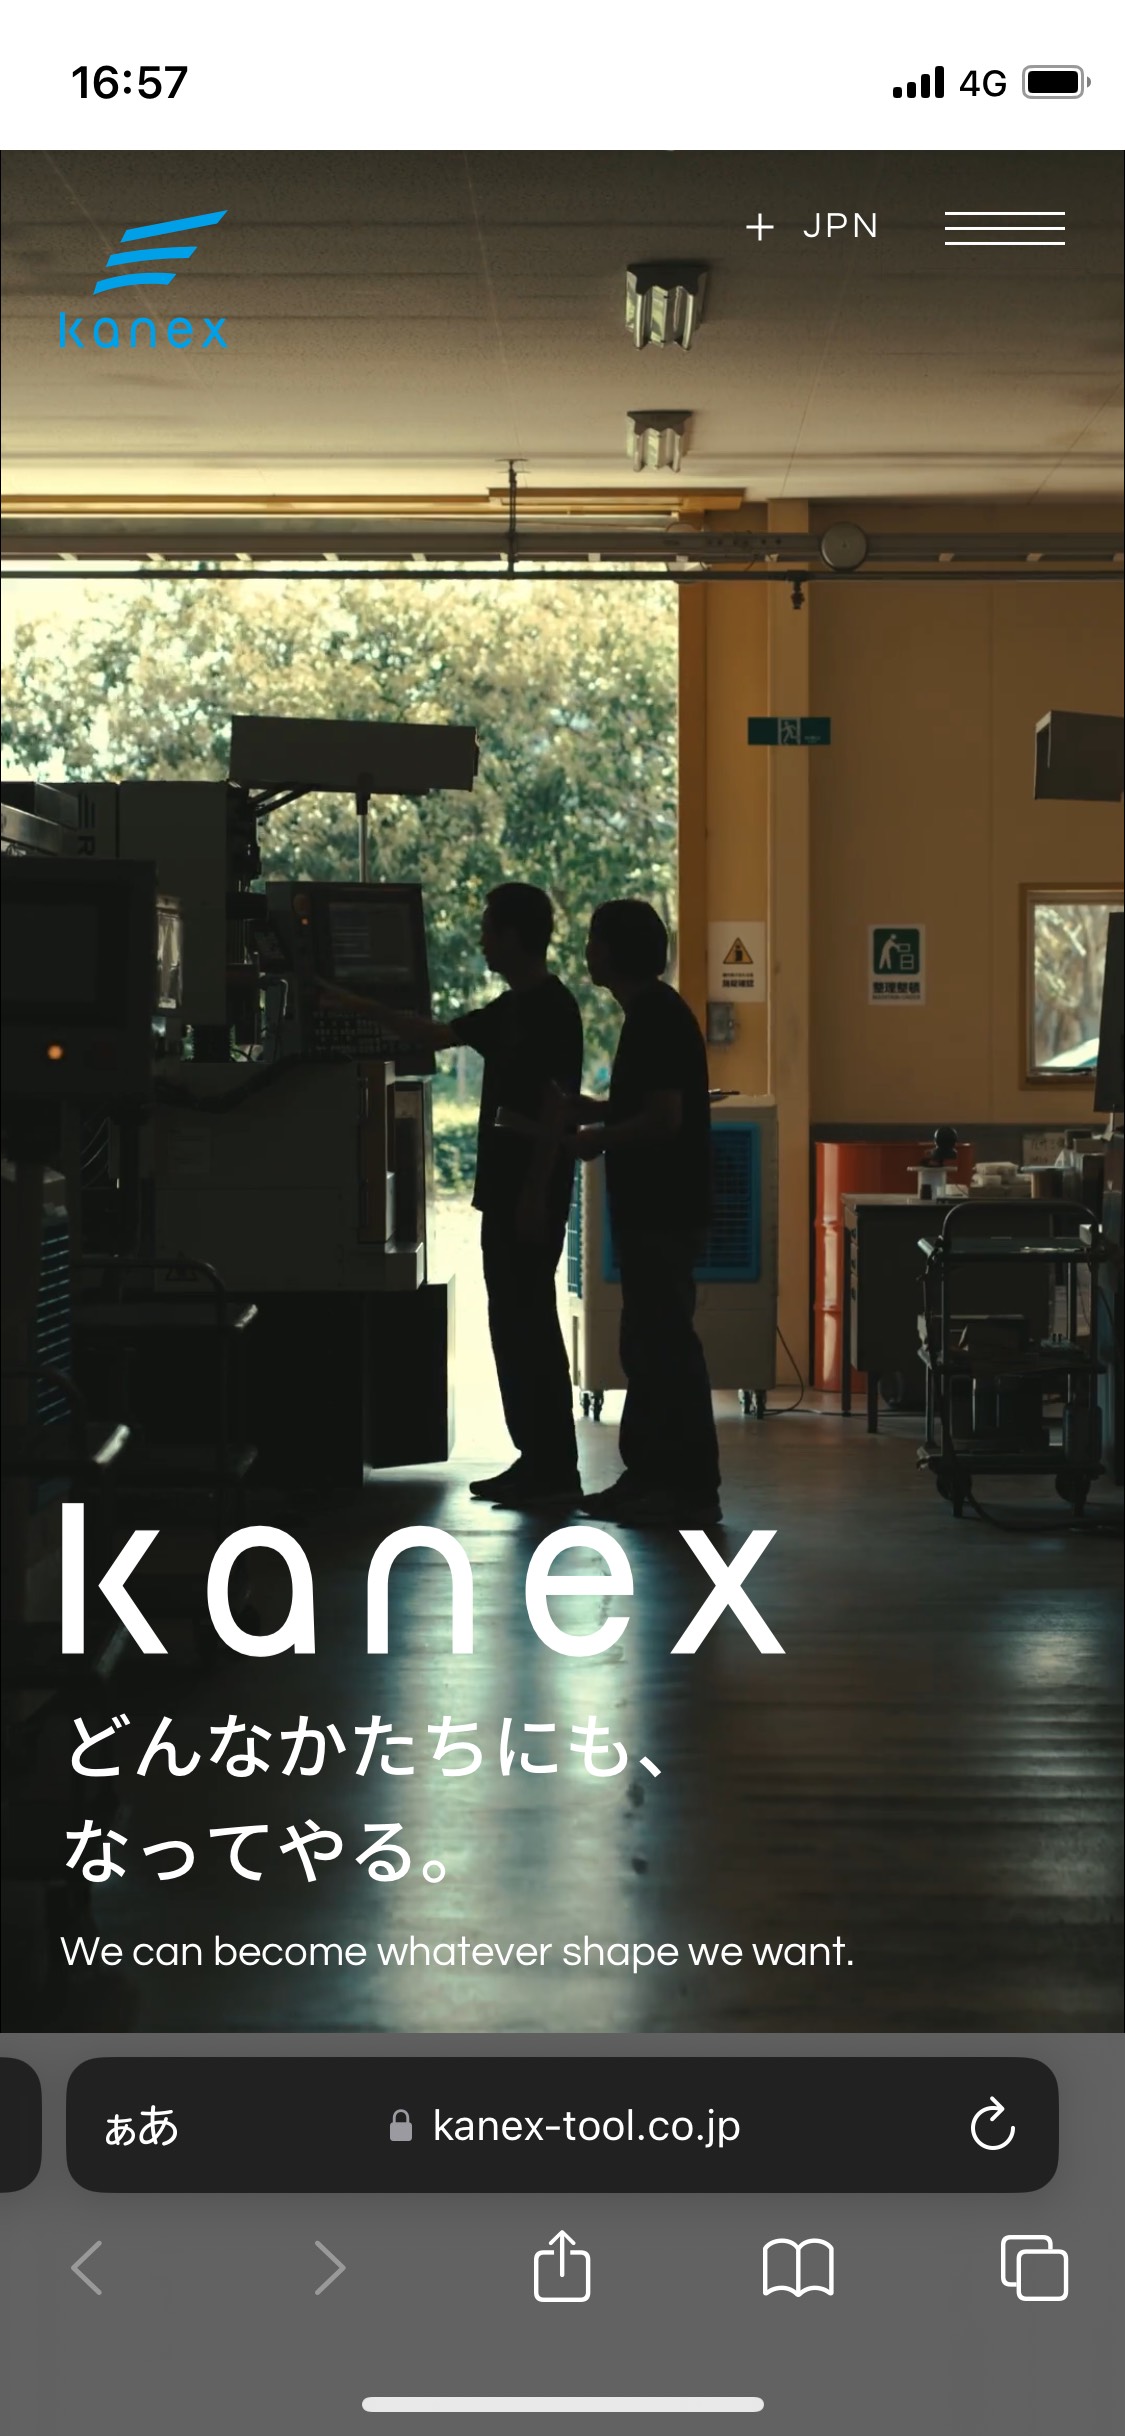 カネックス刃物工業株式会社 | 工業用・産業用機械刃物の製造 KANEX